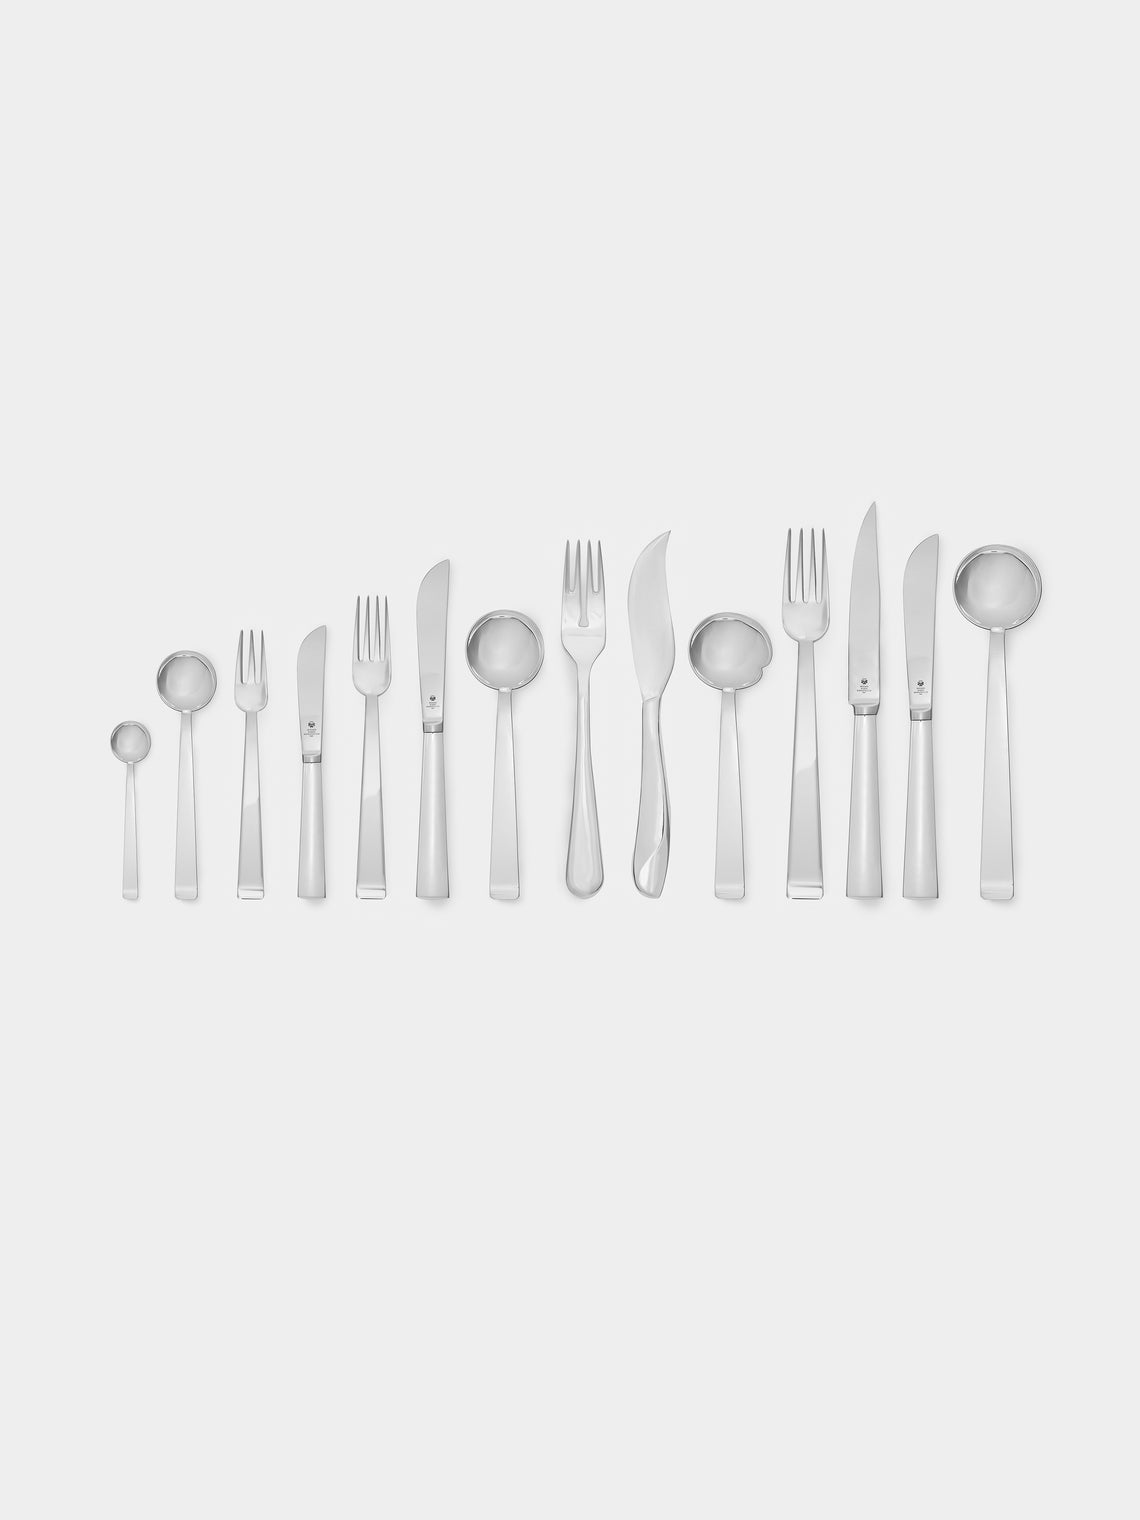 Wiener Silber Manufactur - Josef Hoffmann 135 Silver-Plated Gourmet Spoon -  - ABASK